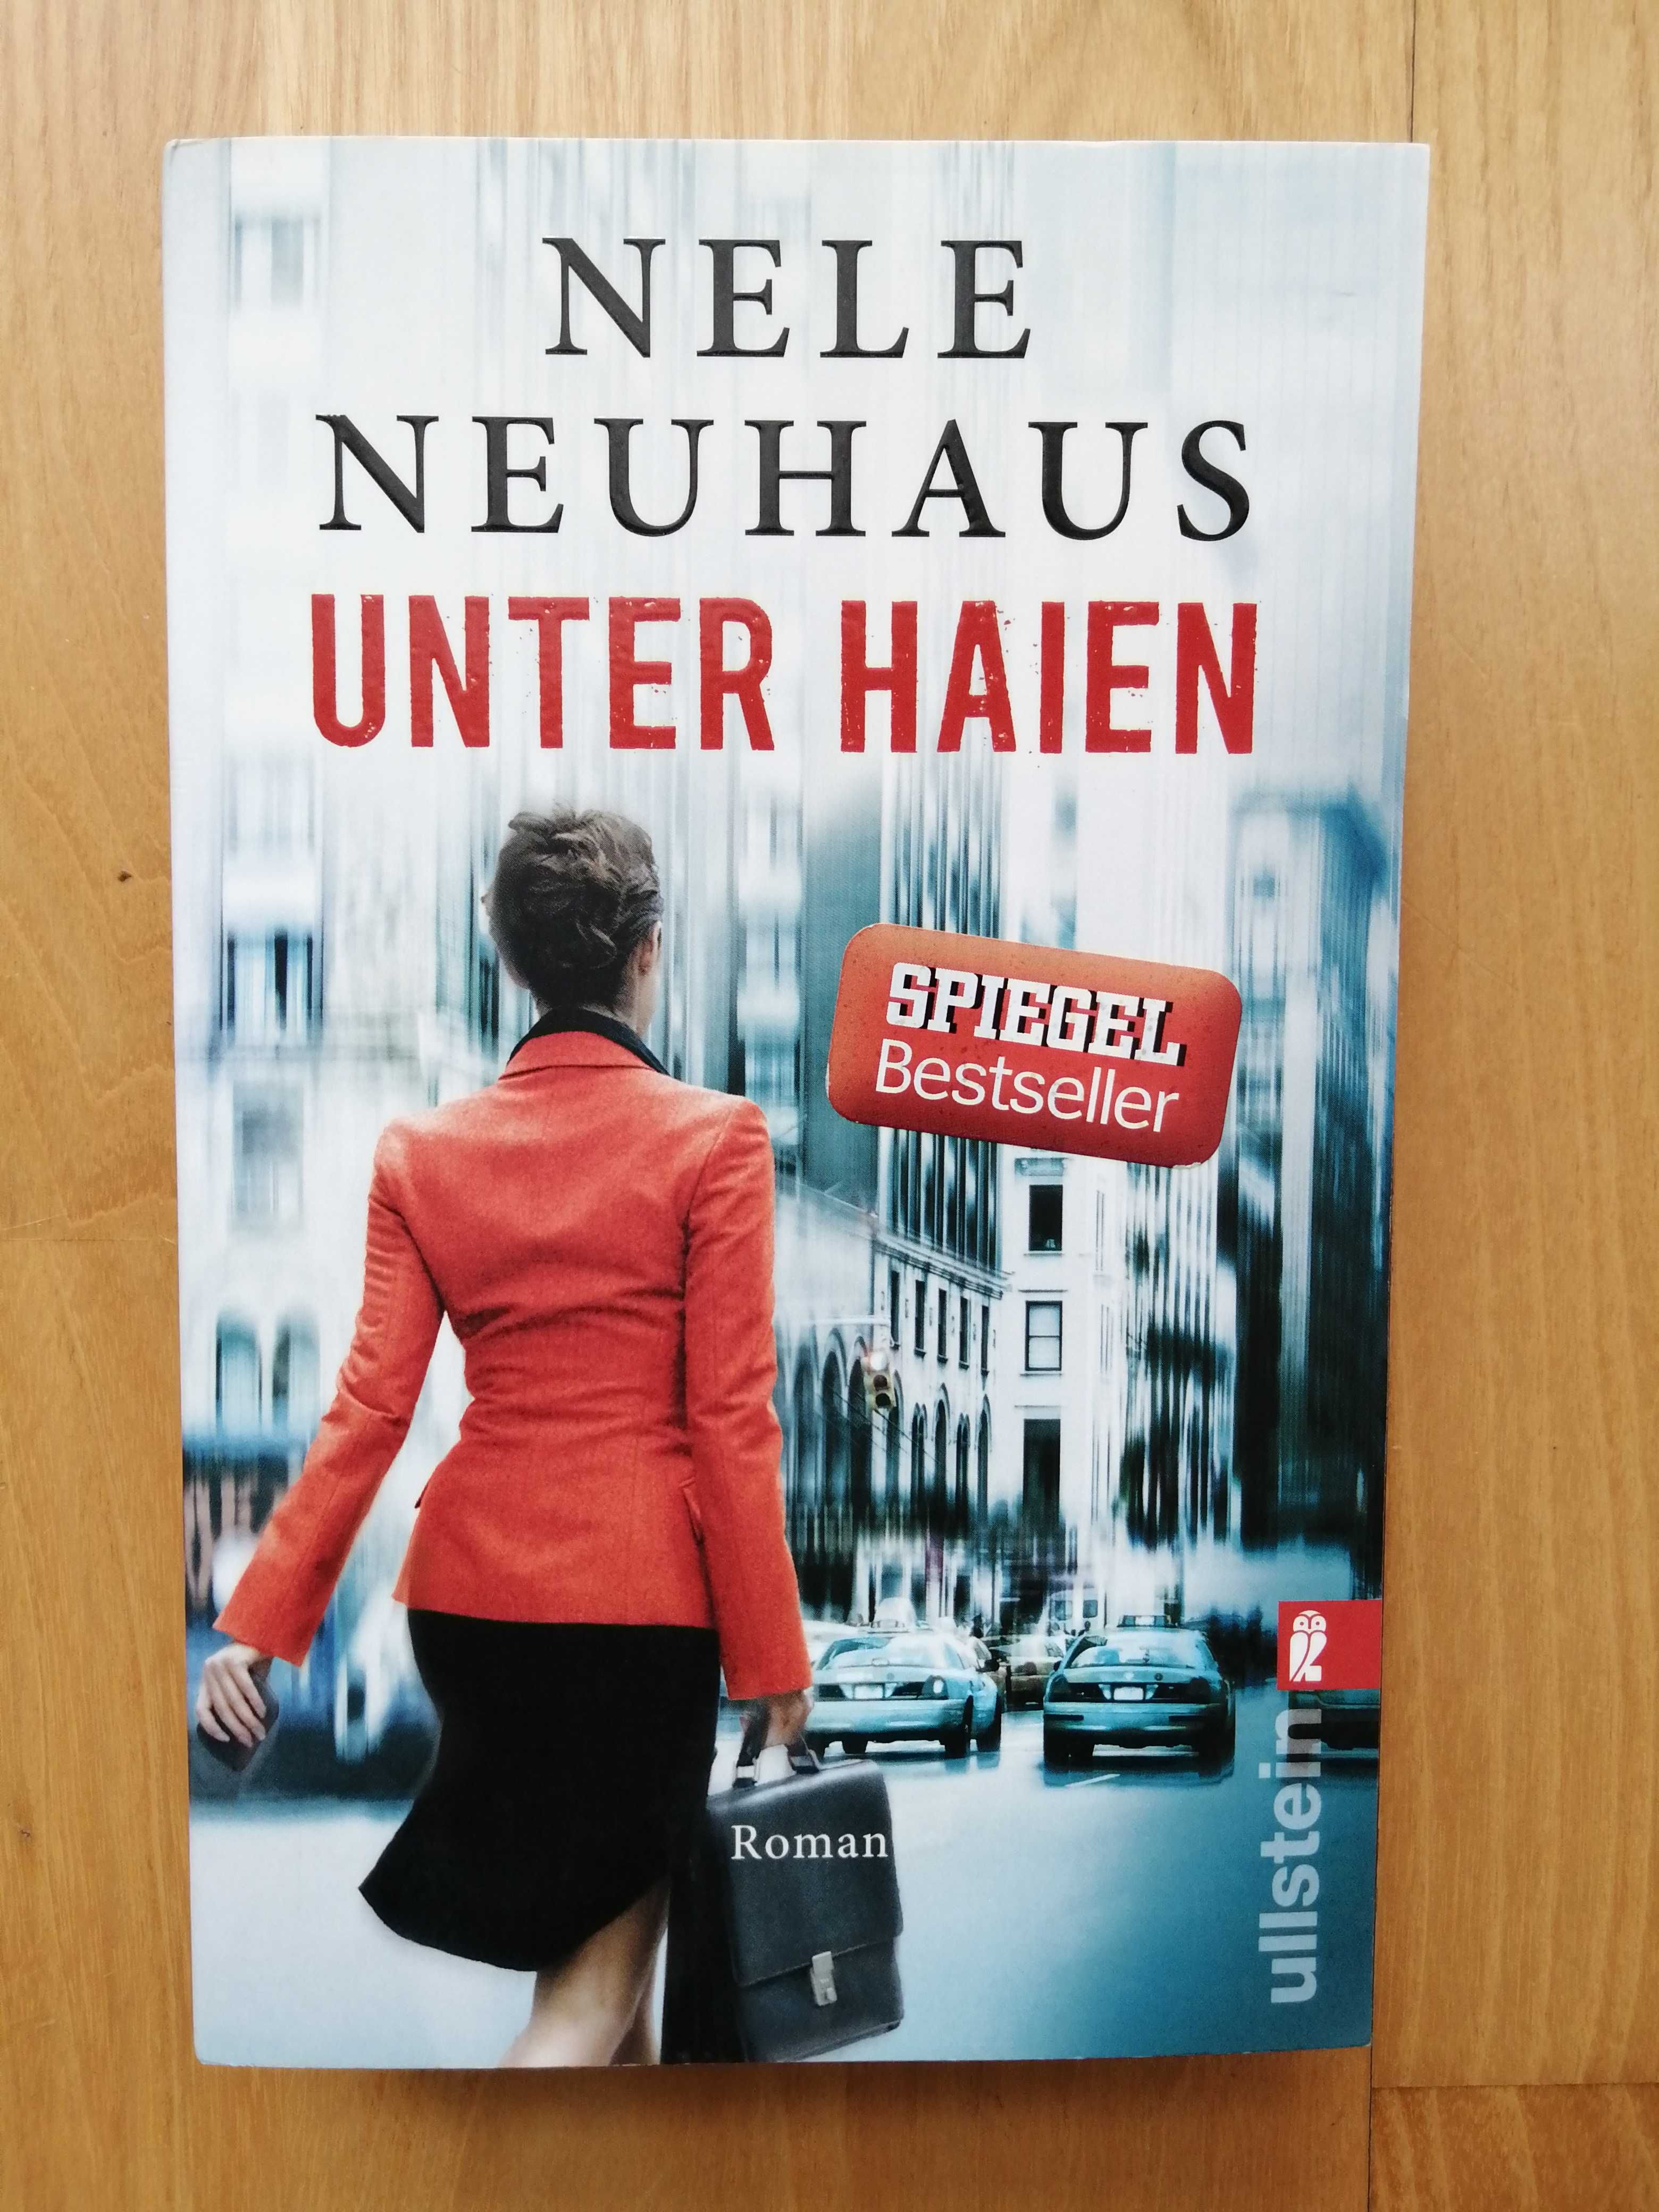 Nele Neuhaus powieść kryminalna książka Unter Haien Deutsch niemiecki